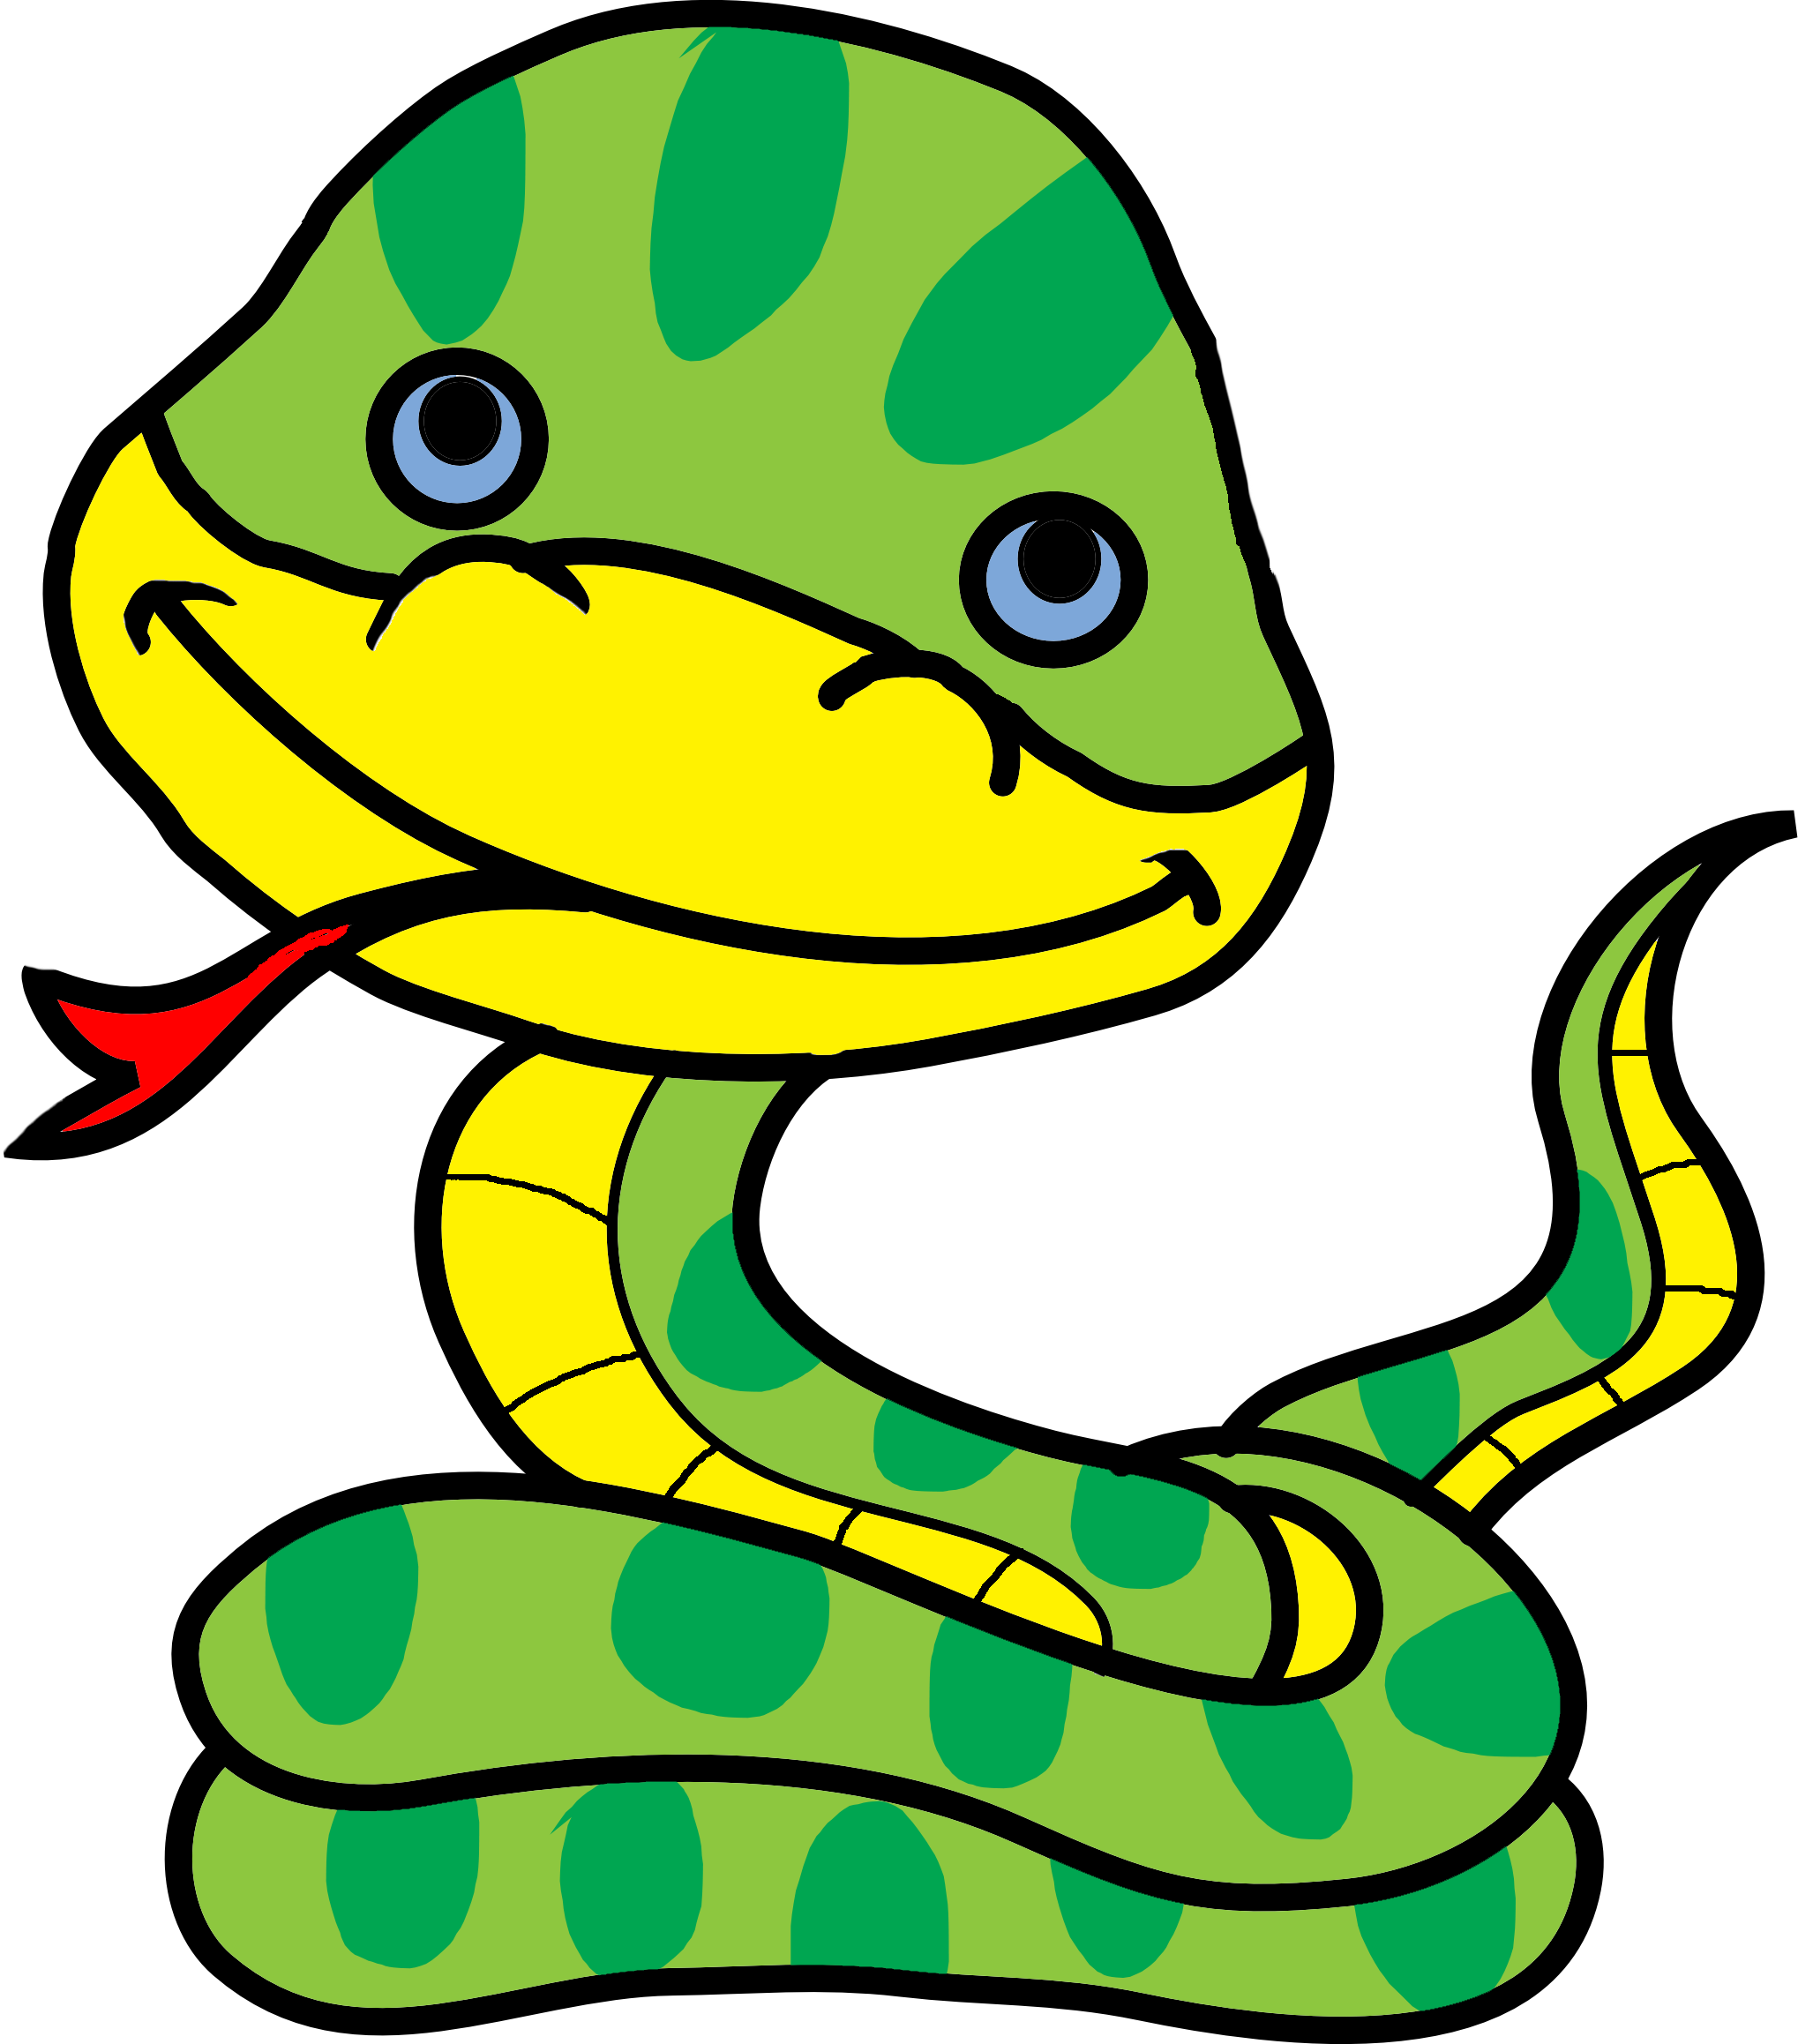 Koleksi Gambar Animasi Kartun Ular Terbaru 2018 Sapawarga - Snake Png Cartoon Green - HD Wallpaper 